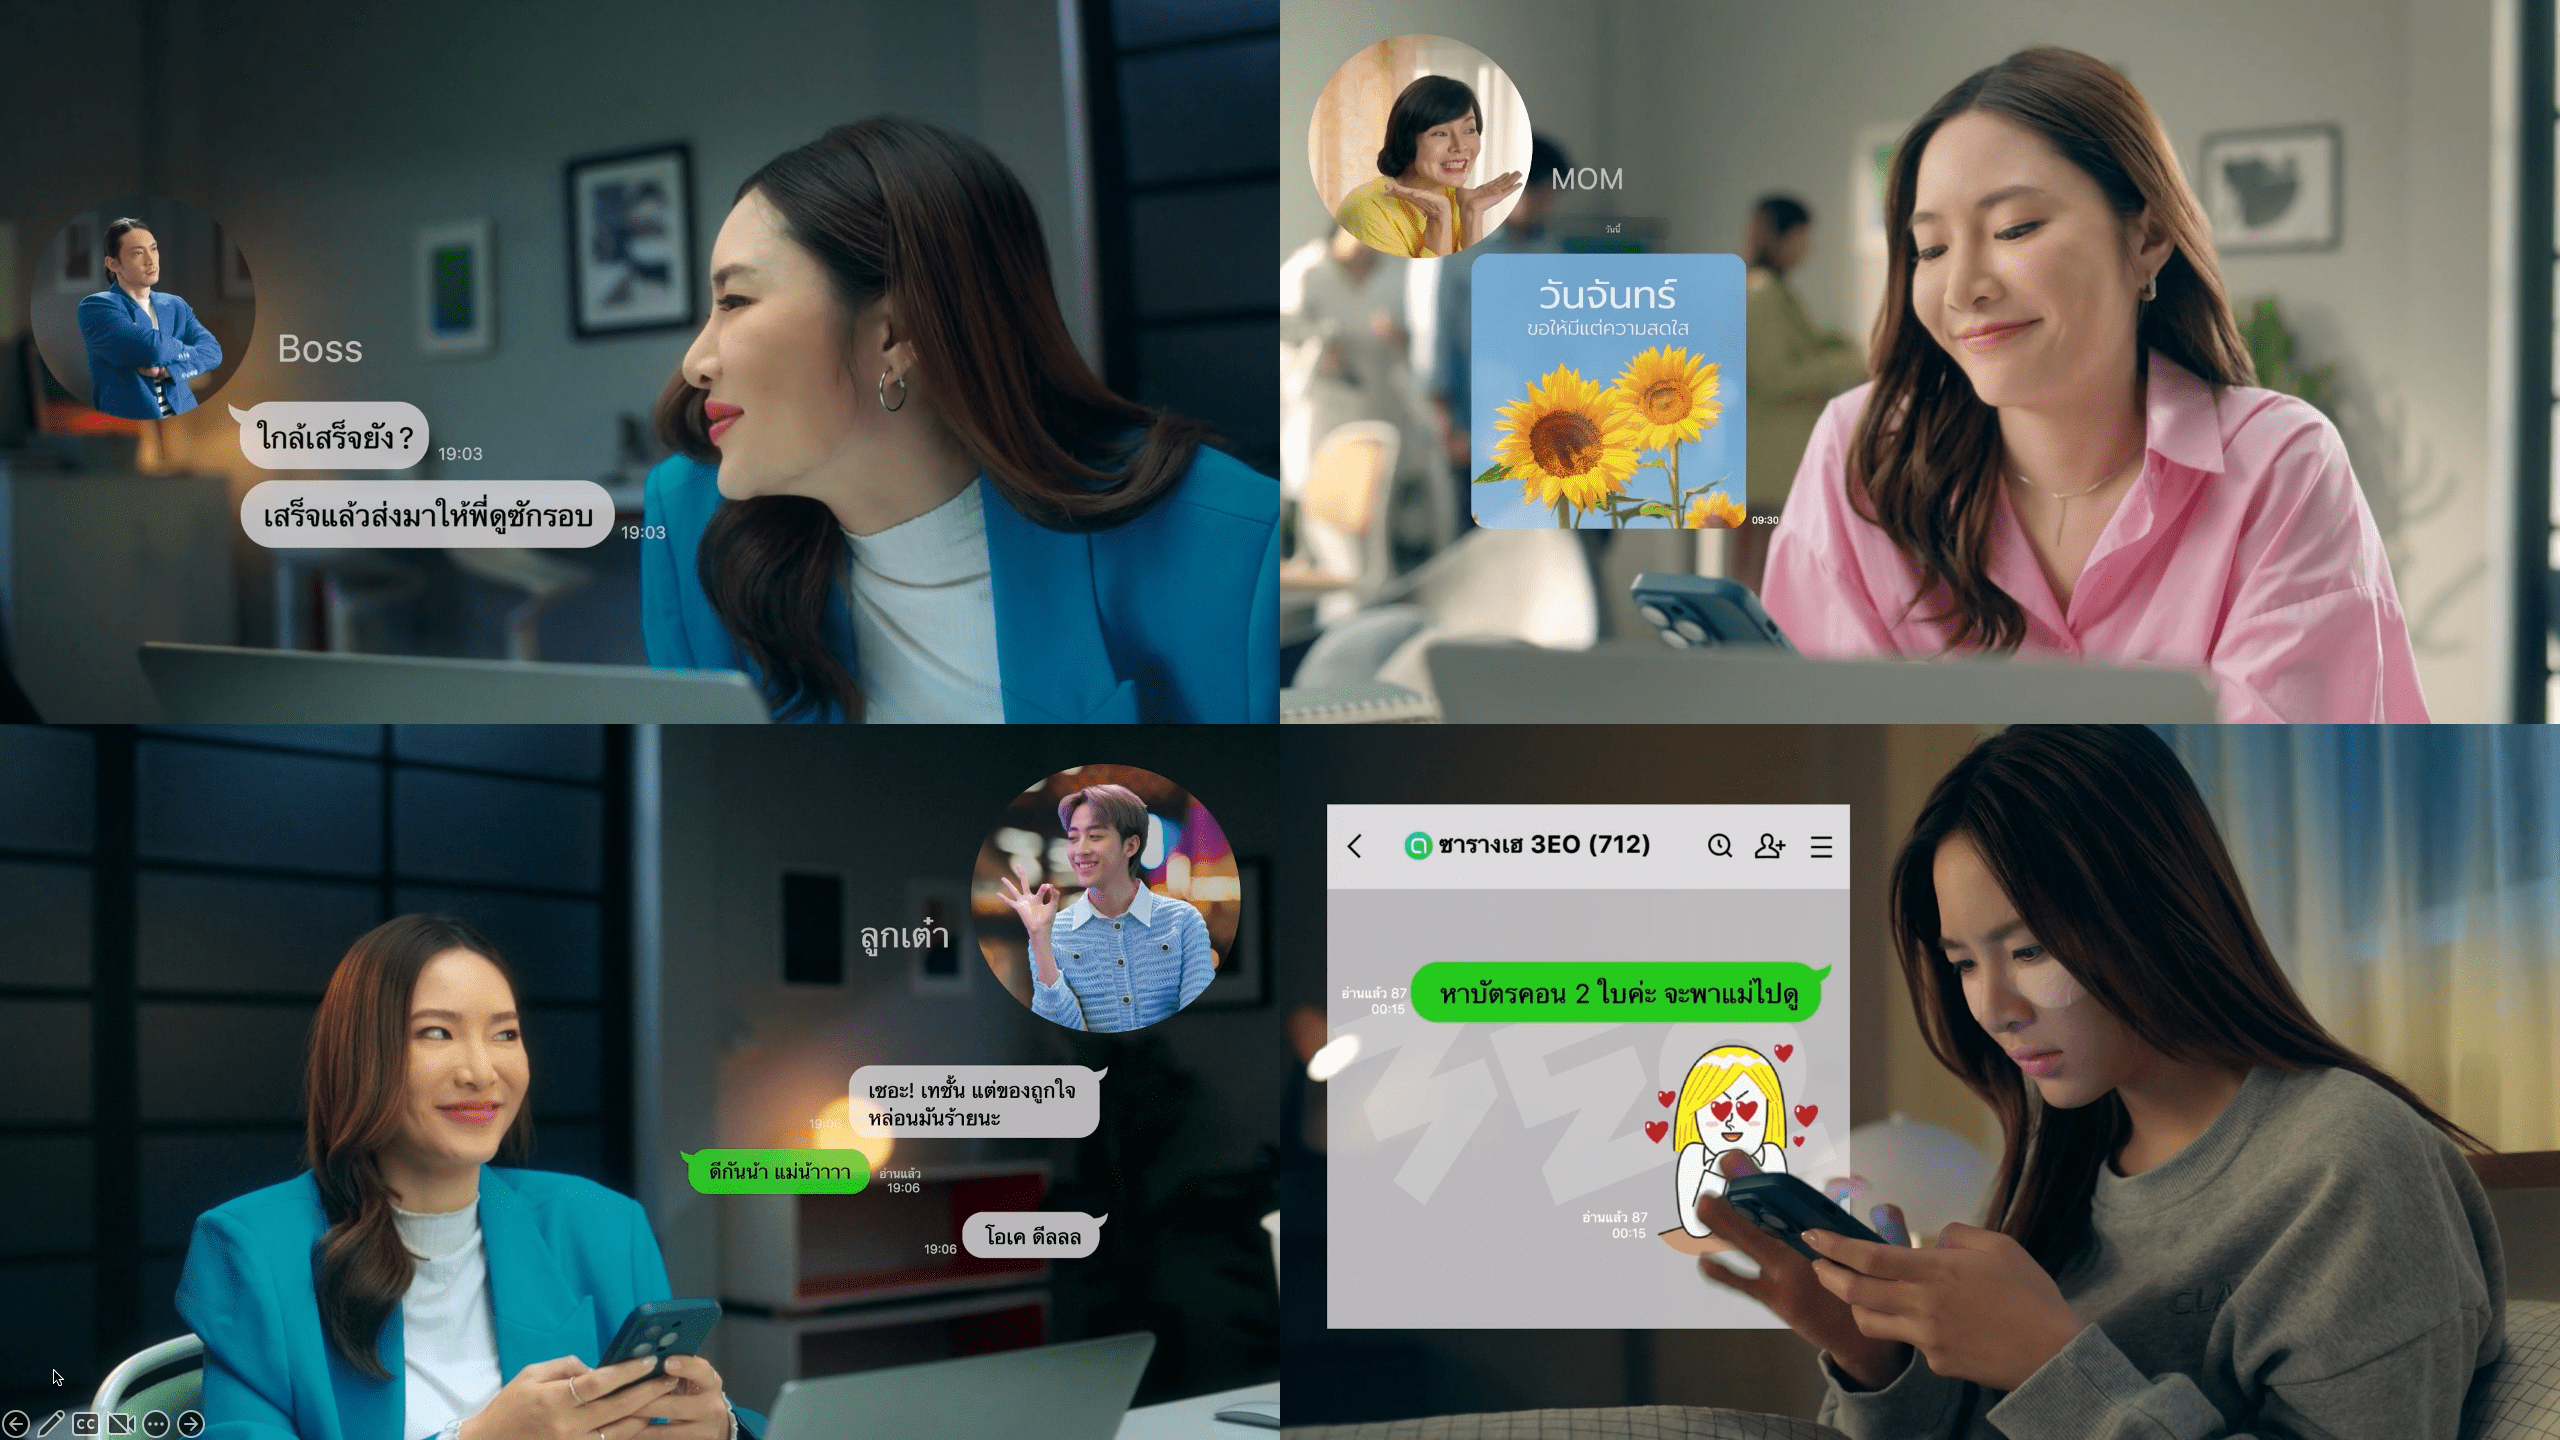 "เปิด LINE เปิดทุกความหมาย" หนังโฆษณาใหม่จาก LINE ประเทศไทย ถ่ายทอดอินไซต์ชาว "เดอะ แบก" สานต่อแนวคิด LINE Digital Well-being